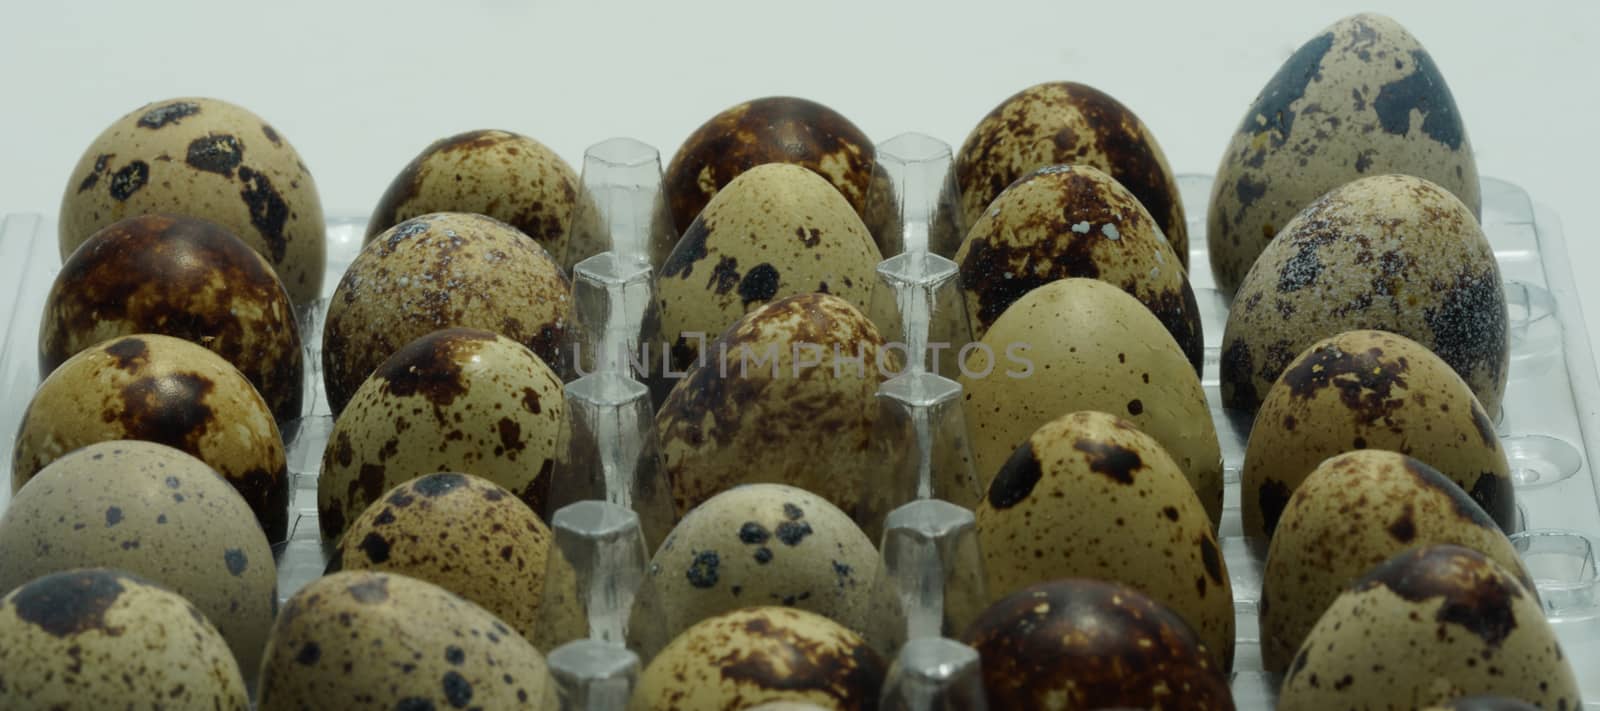 Quail eggs laid in a basket.